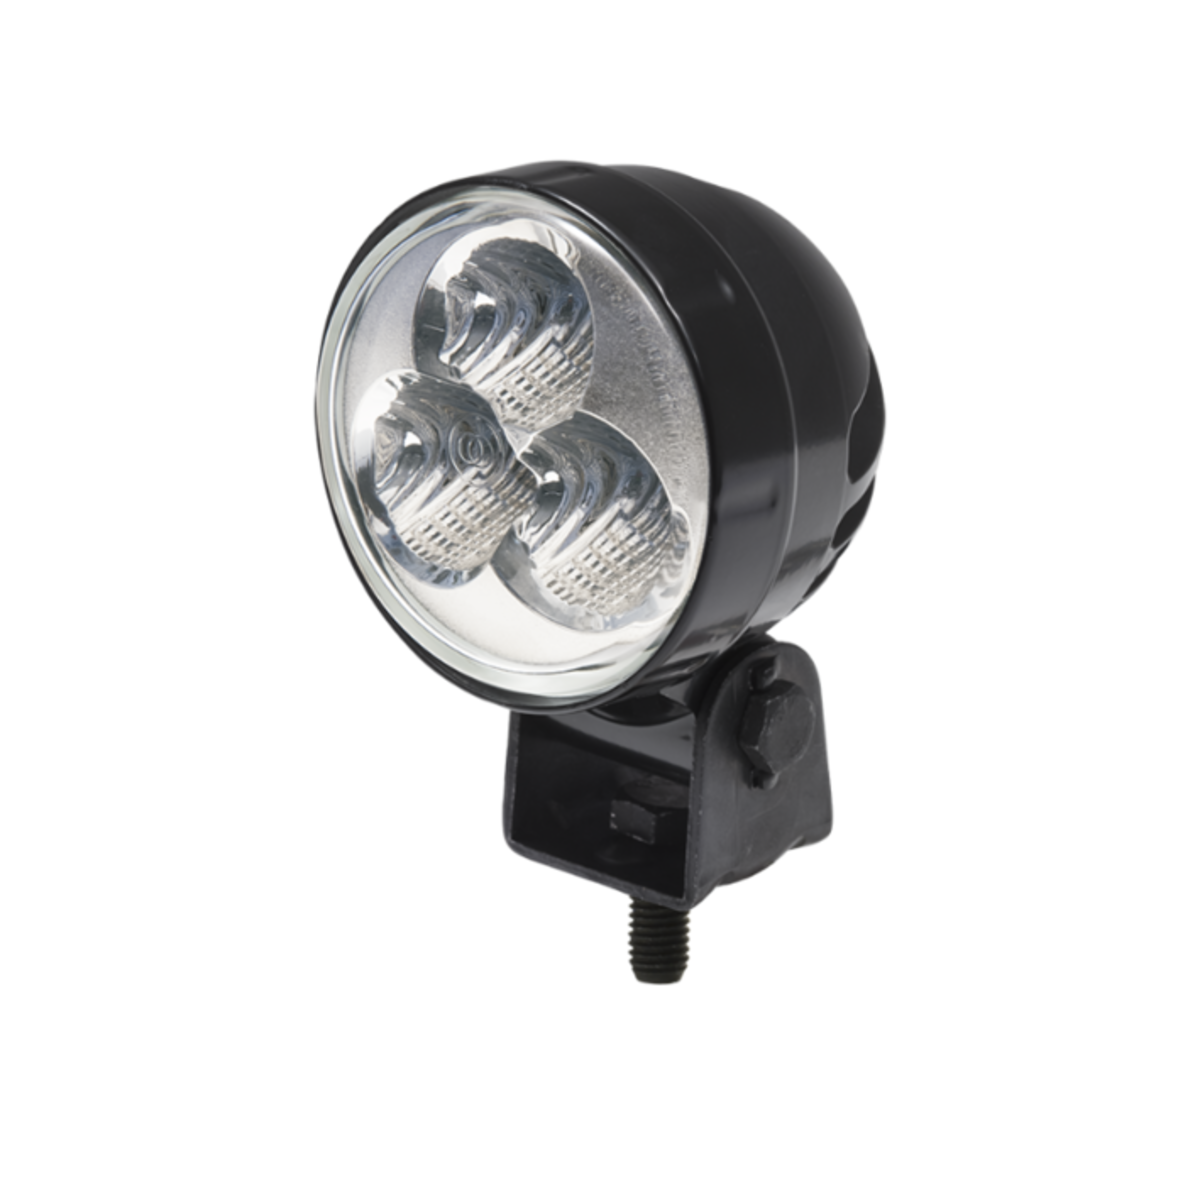 LED WORK LAMP 9 - 32V